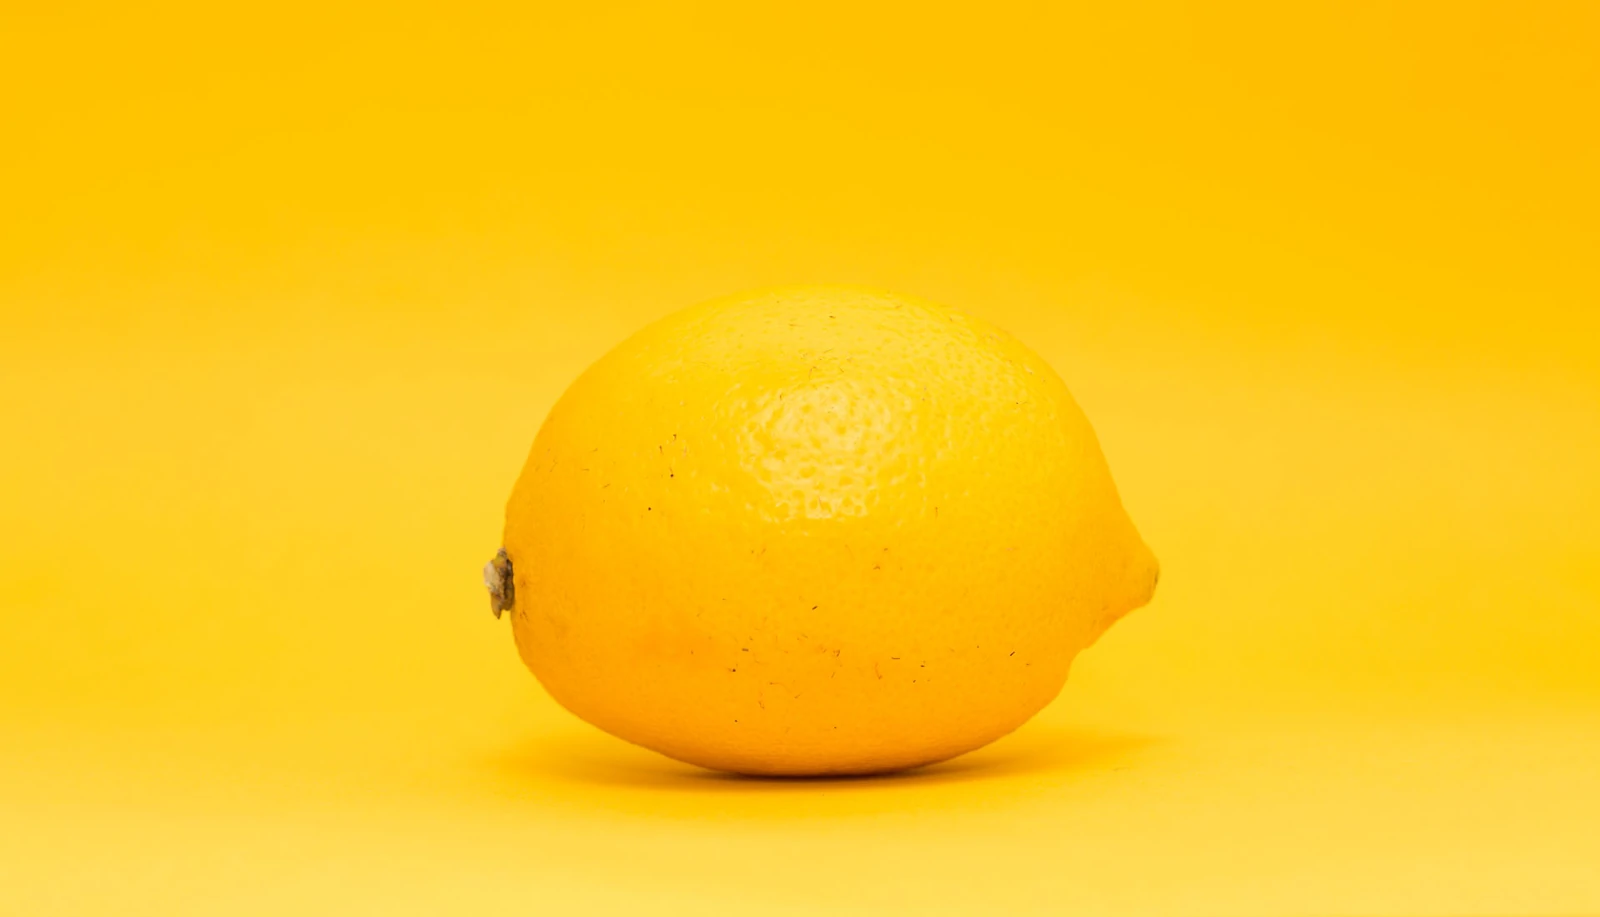 limon amarillo sobre fondo amarillo